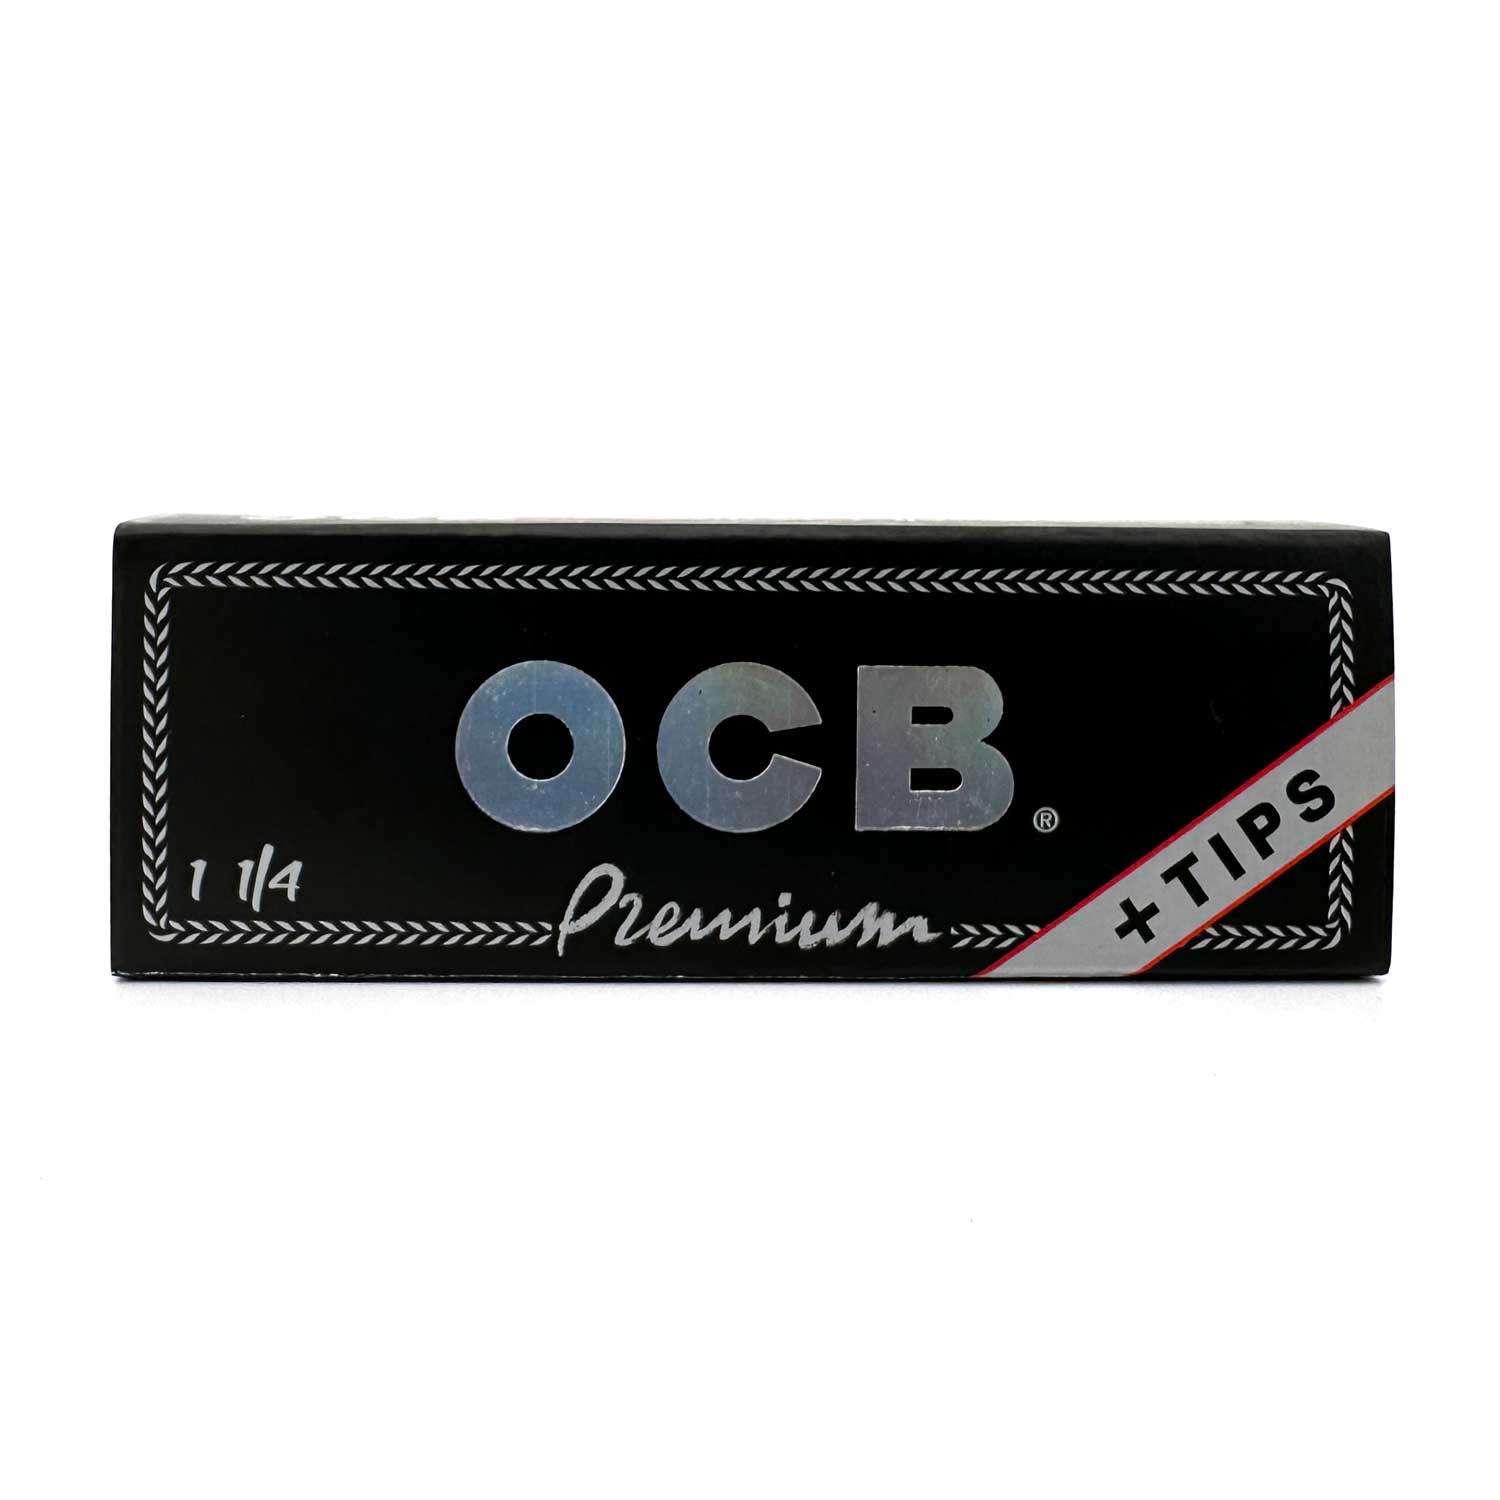 OCB Premium Slim with Tips 